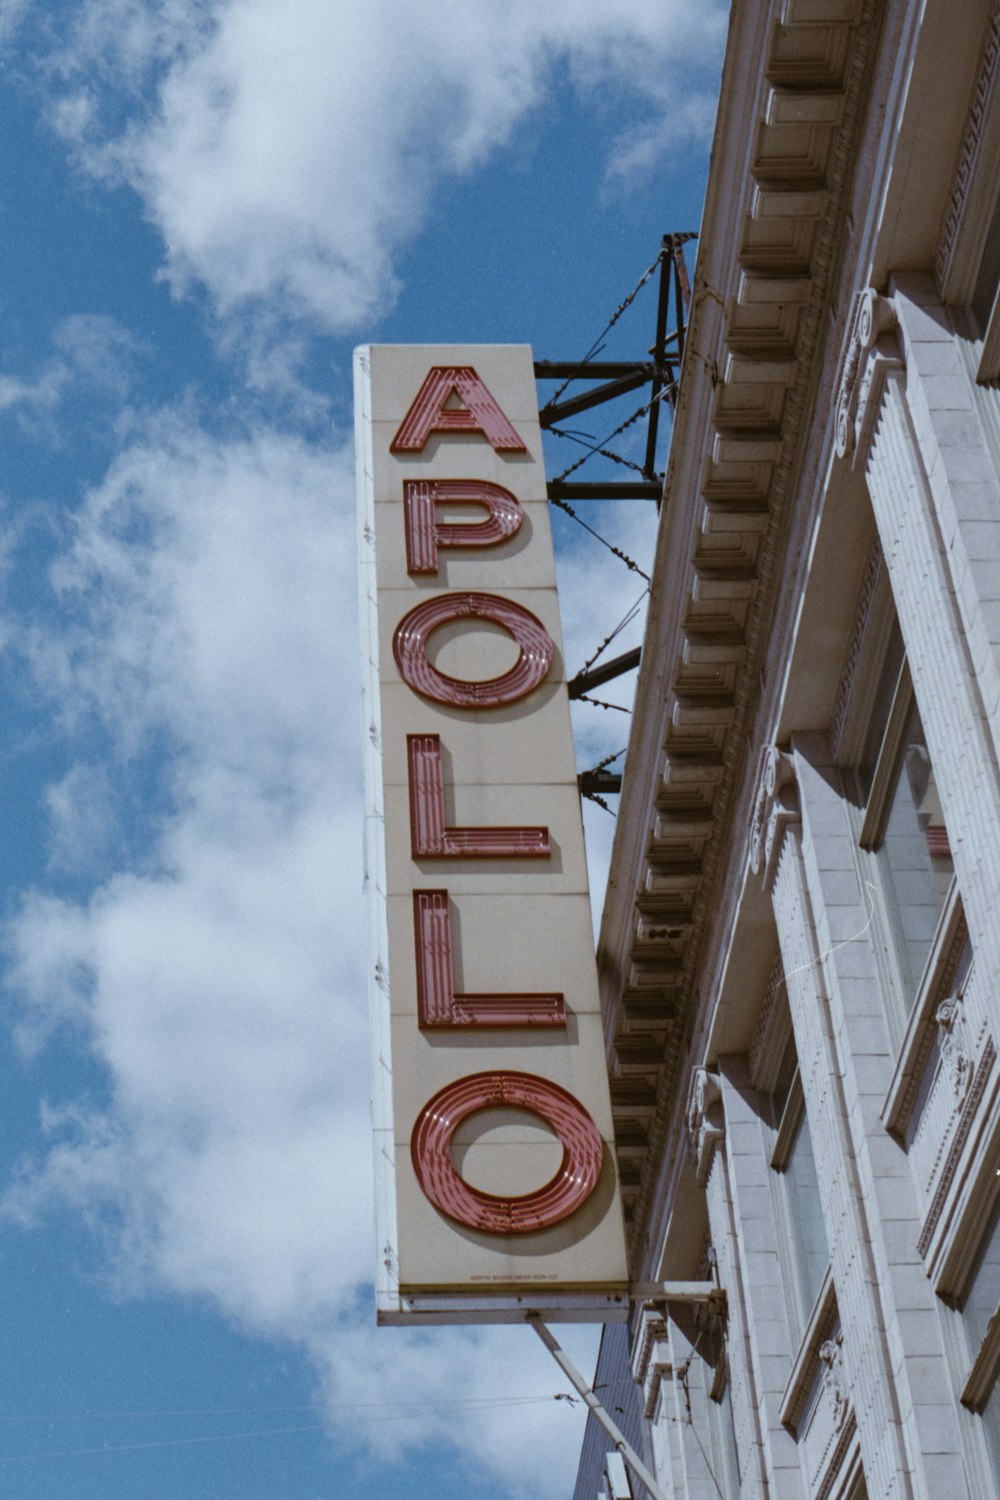 Apollo signage